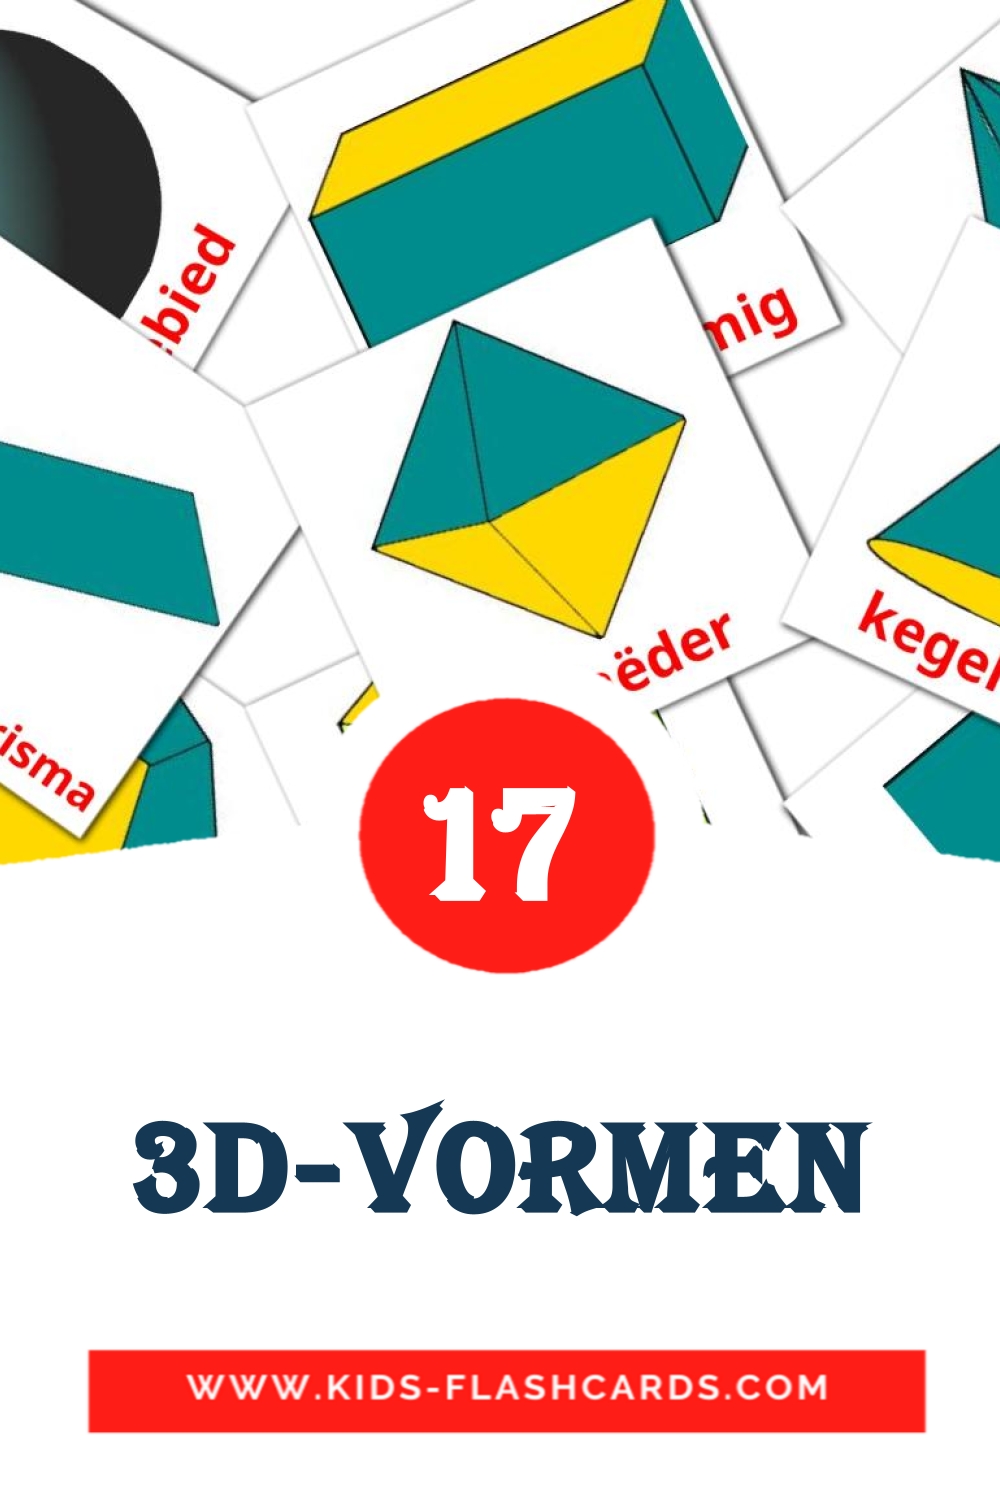 17 cartes illustrées de 3D-vormen pour la maternelle en néerlandais